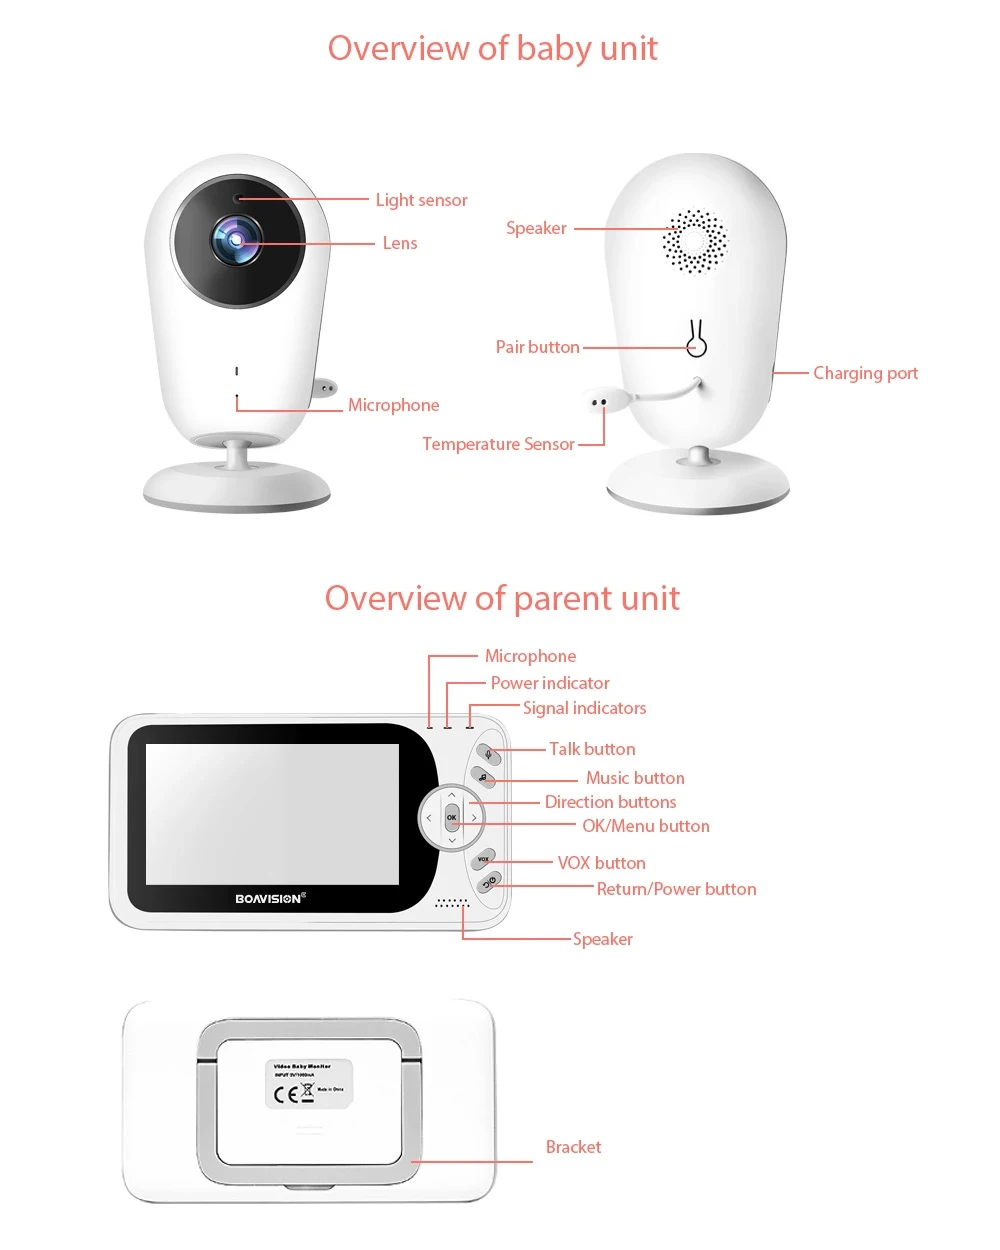 4.3 palec bezdrátový video děťátko monitor kvočna přenosné děťátko chůva IR LED noc vidění interkom pozorování záruka kamera VB608